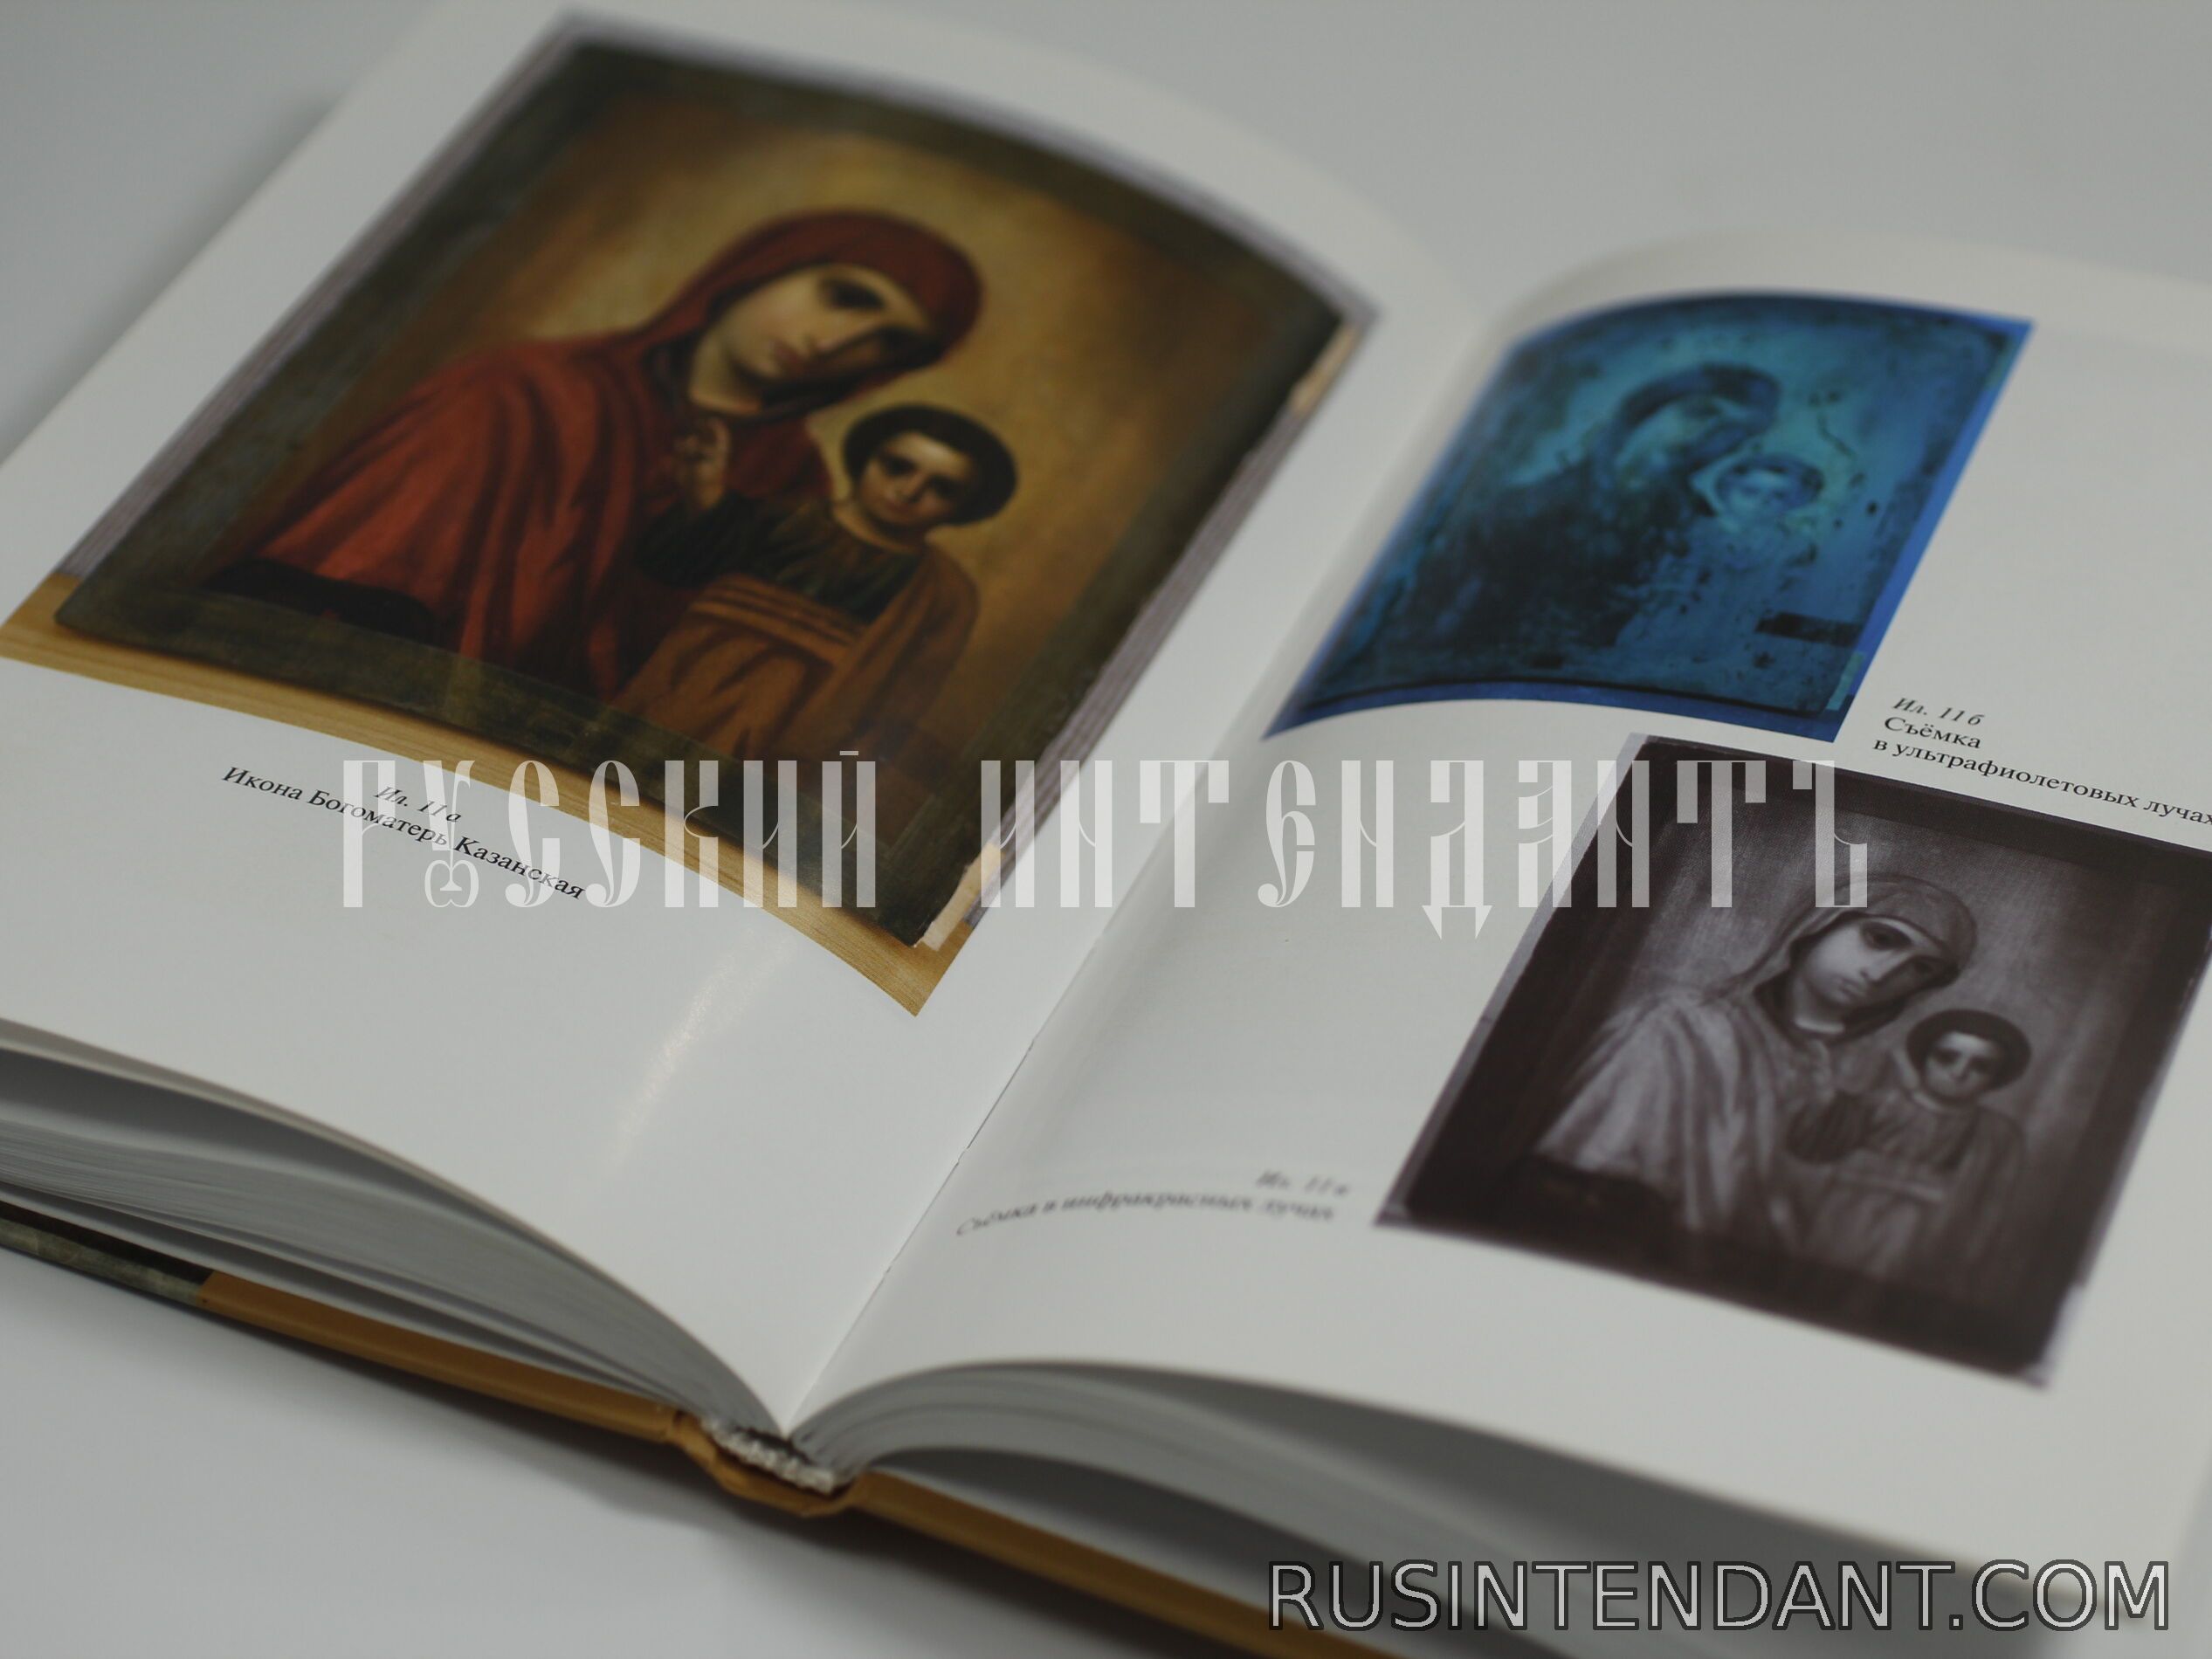 Фото 2: Книга «Реставрация произведений станковой темперной живописи» 